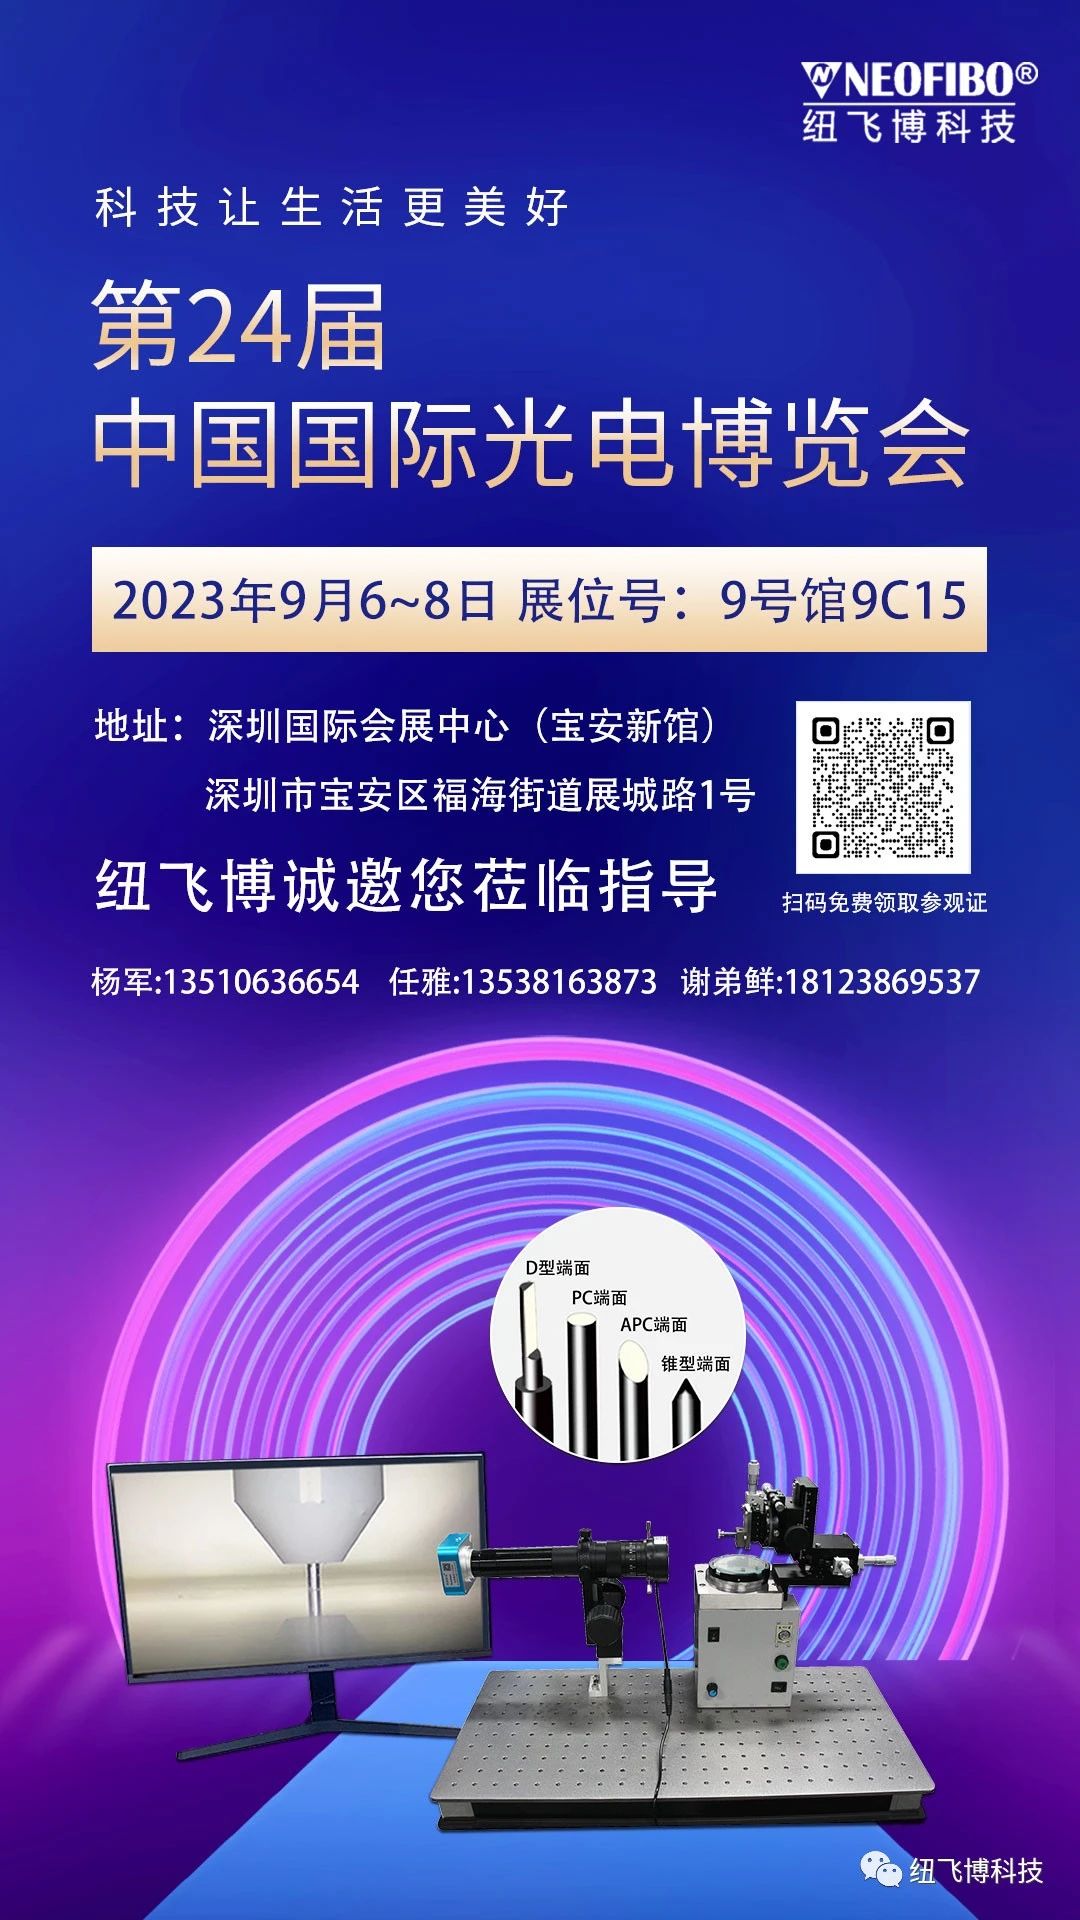 【CIOE 2023】2023年9月6~8日 展位:9号馆9C15纽飞博将携最新研发设备亮相中国光电博览会！